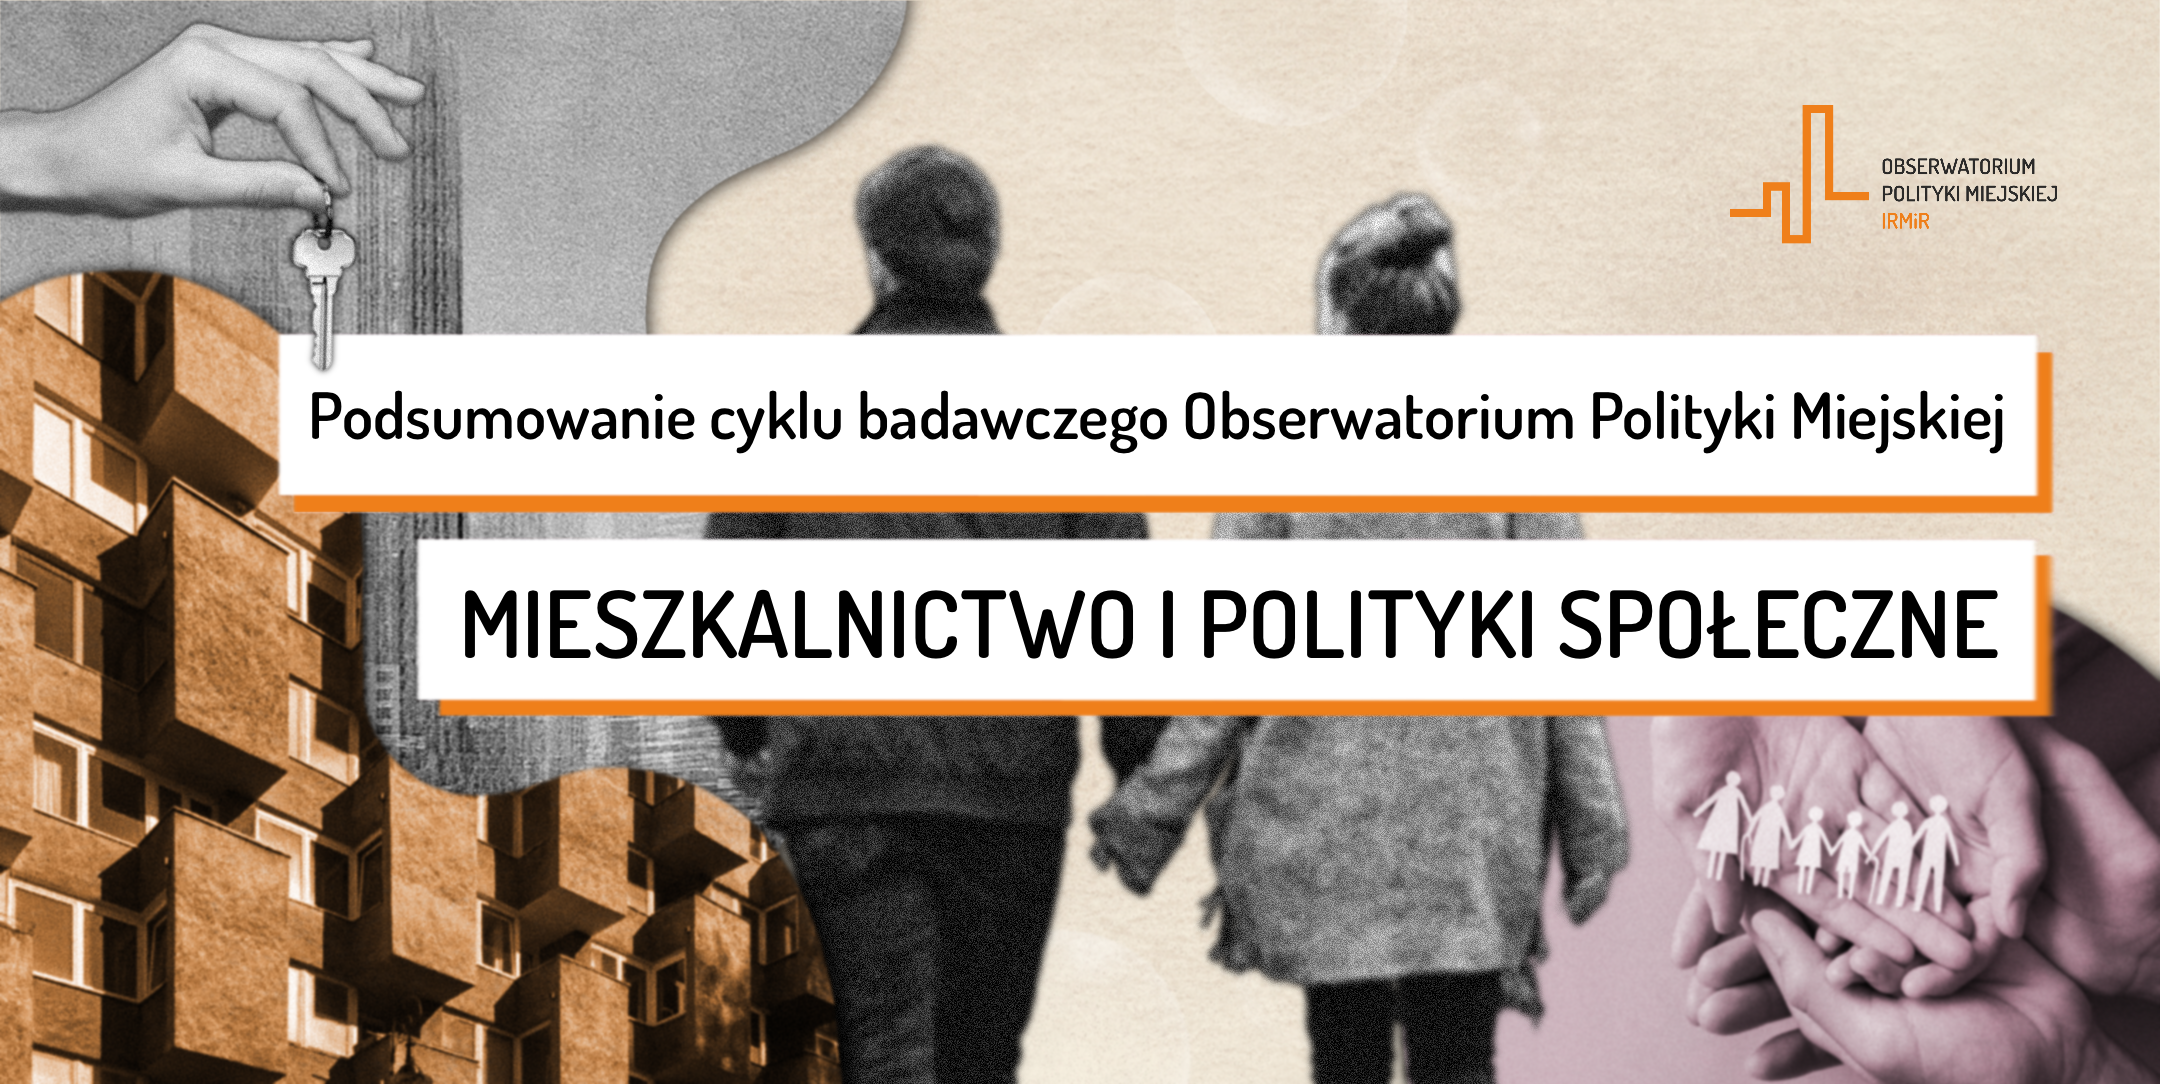 Podsumowanie cyklu badawczego Obserwatorium Polityki Miejskiej - Mieszkalnictwo i polityki społeczne